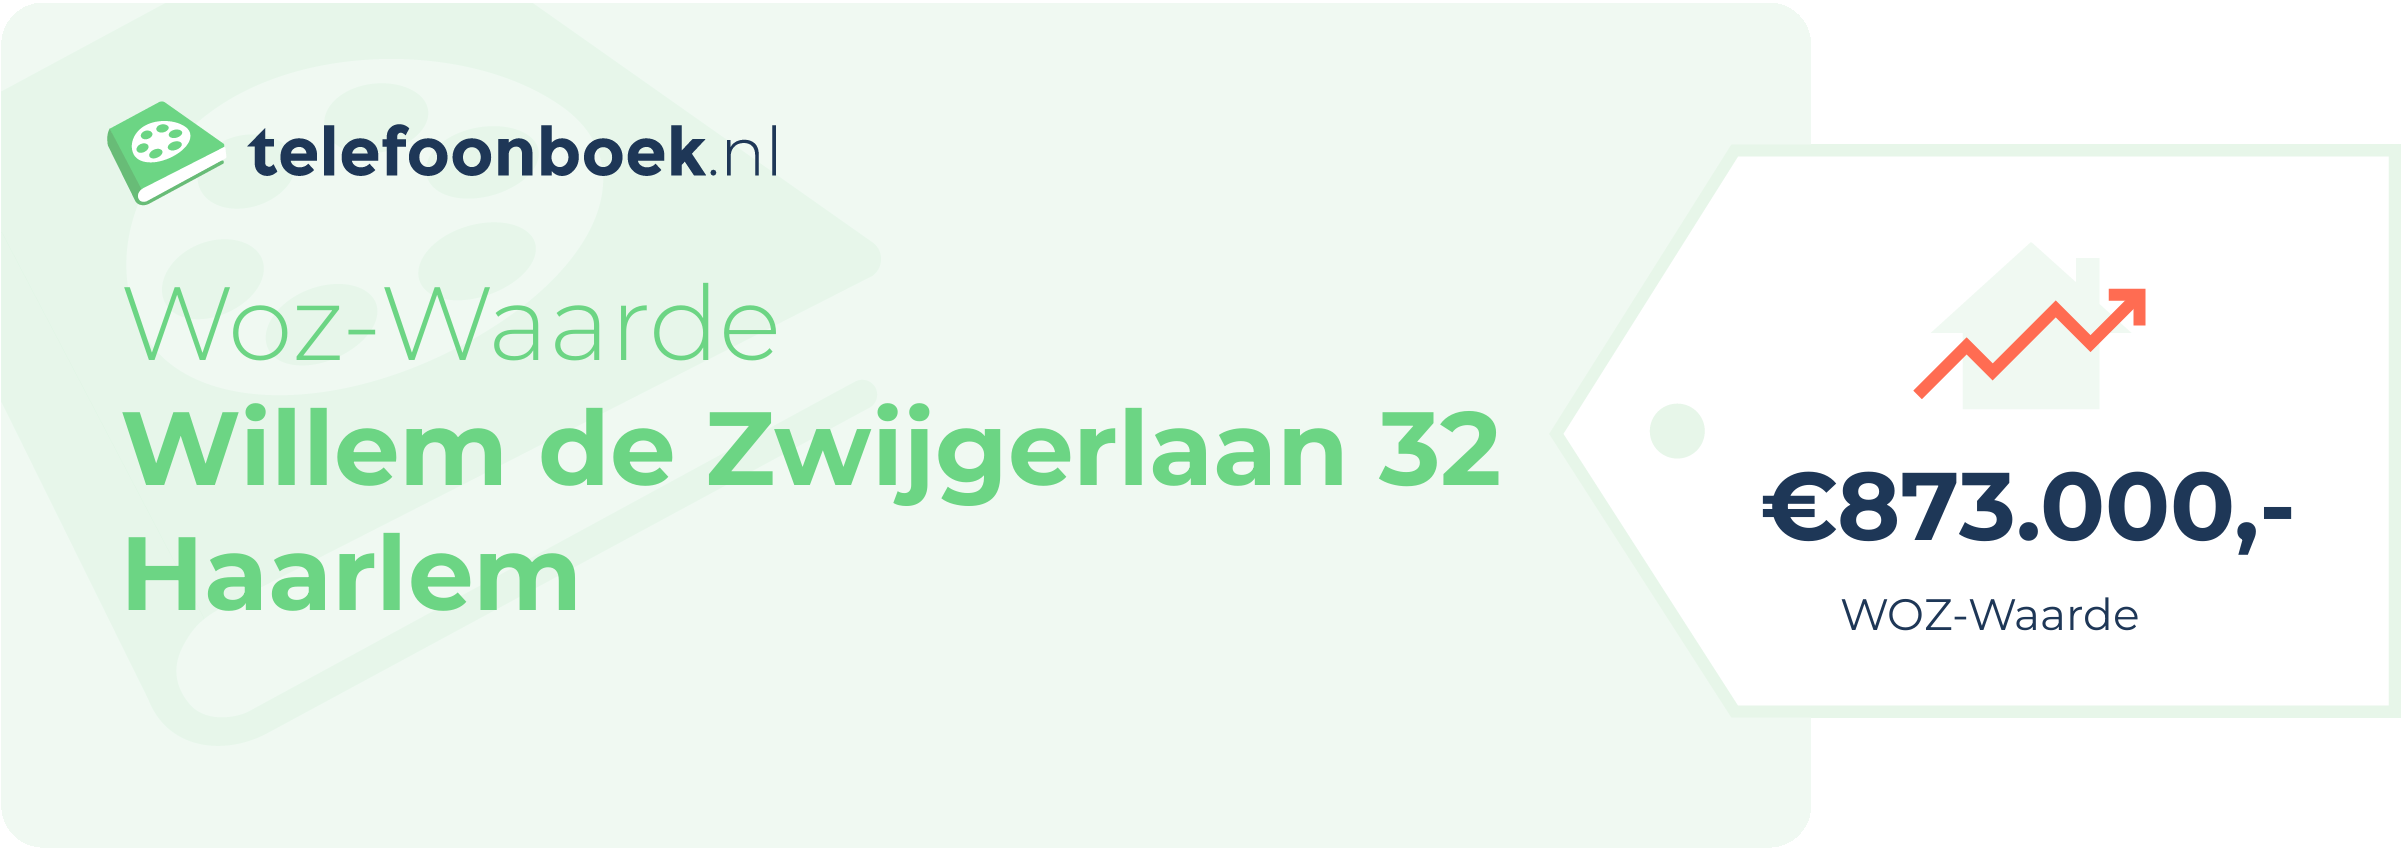 WOZ-waarde Willem De Zwijgerlaan 32 Haarlem